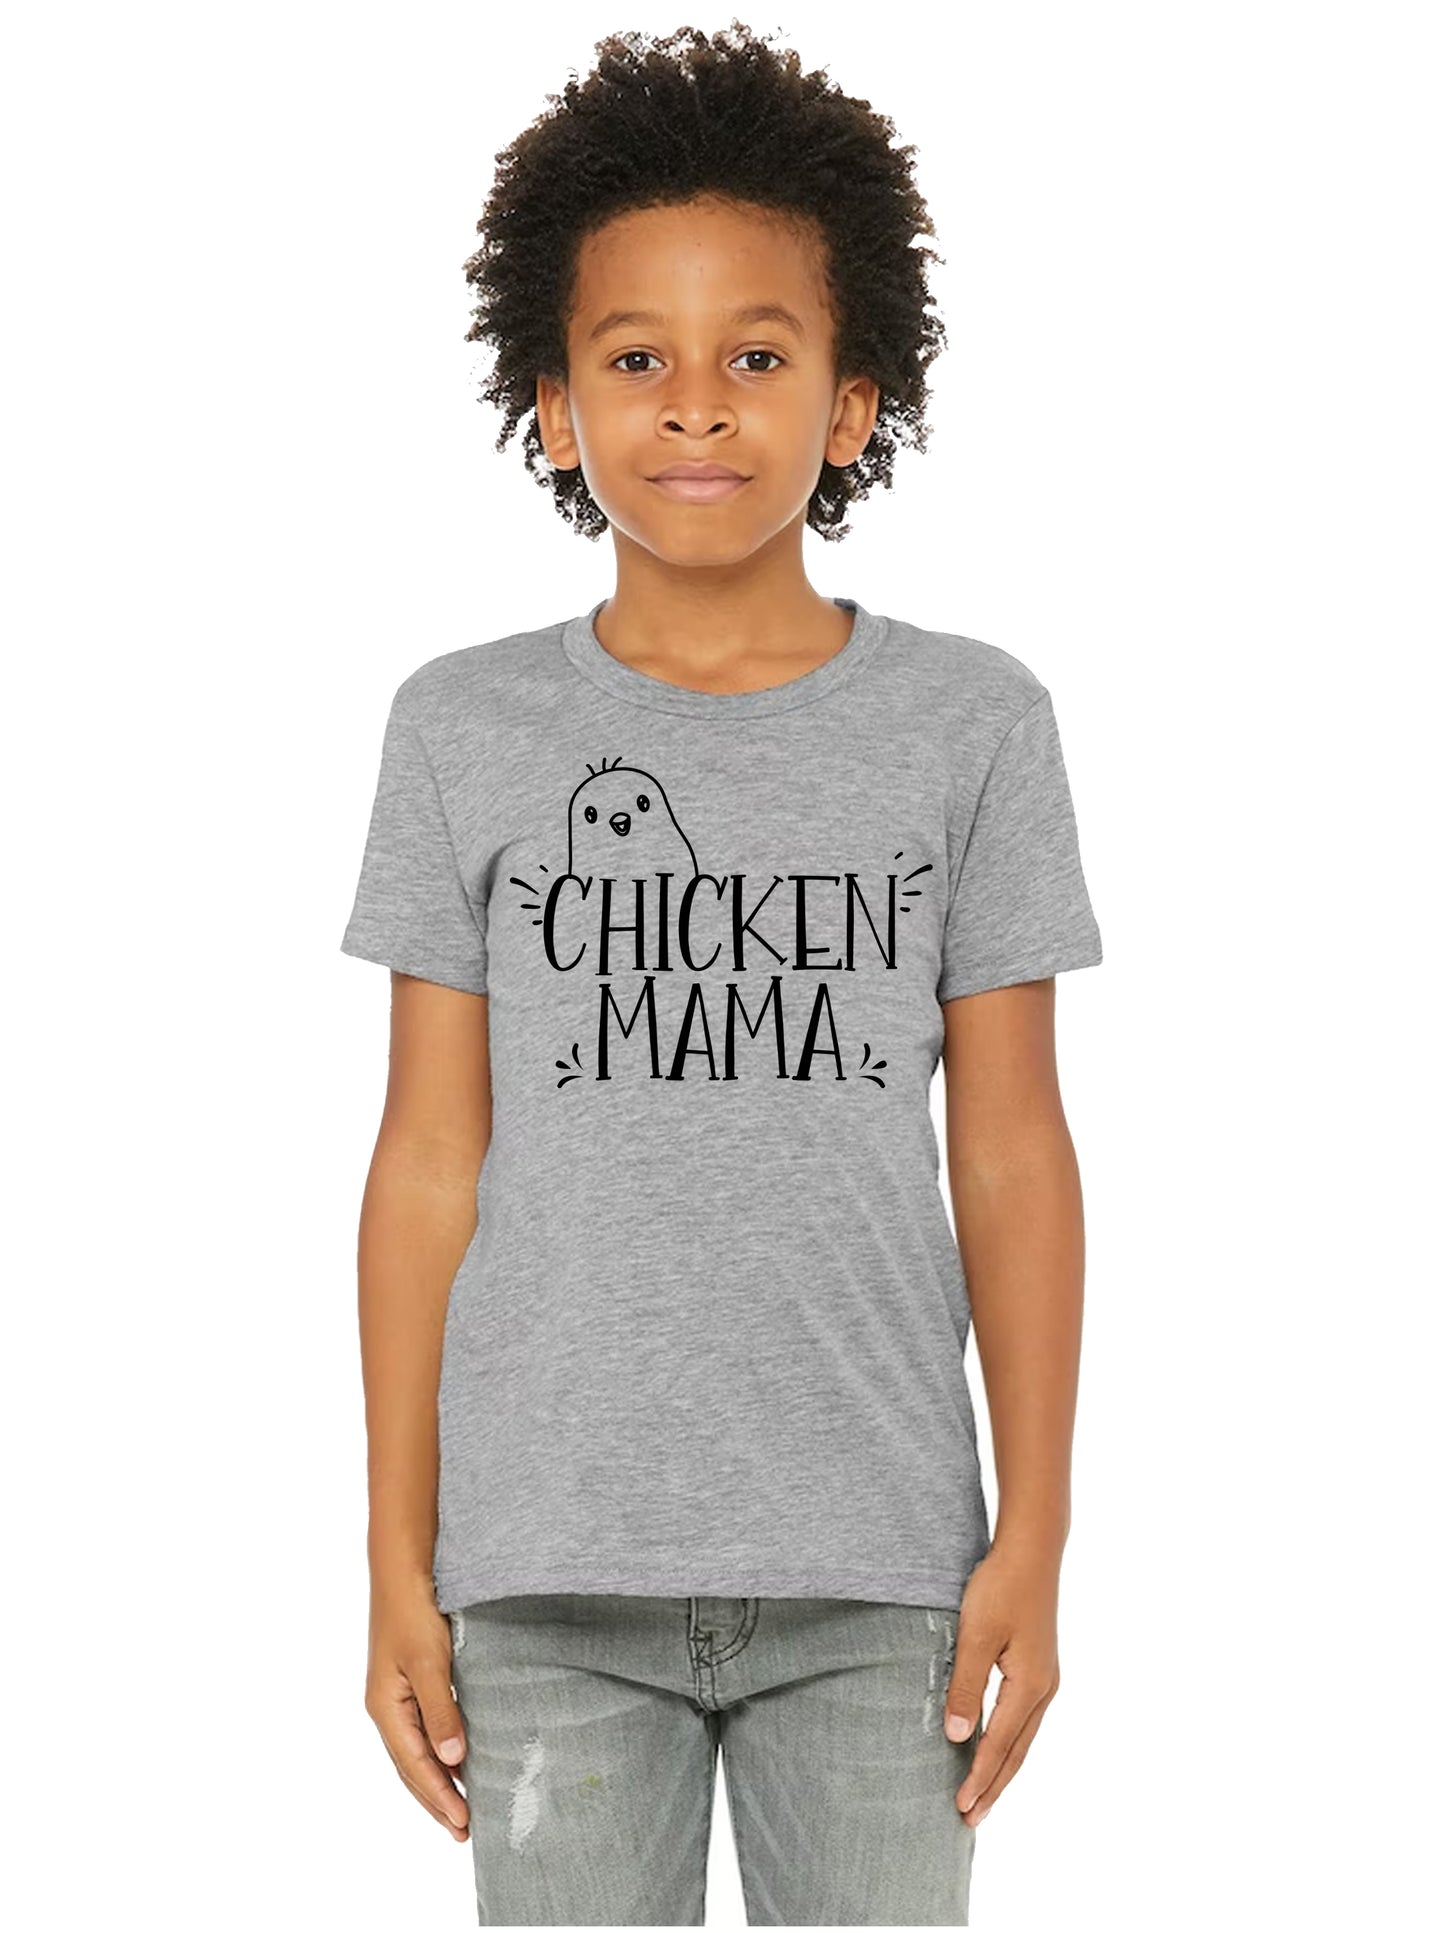 Chicken Mama Shirt